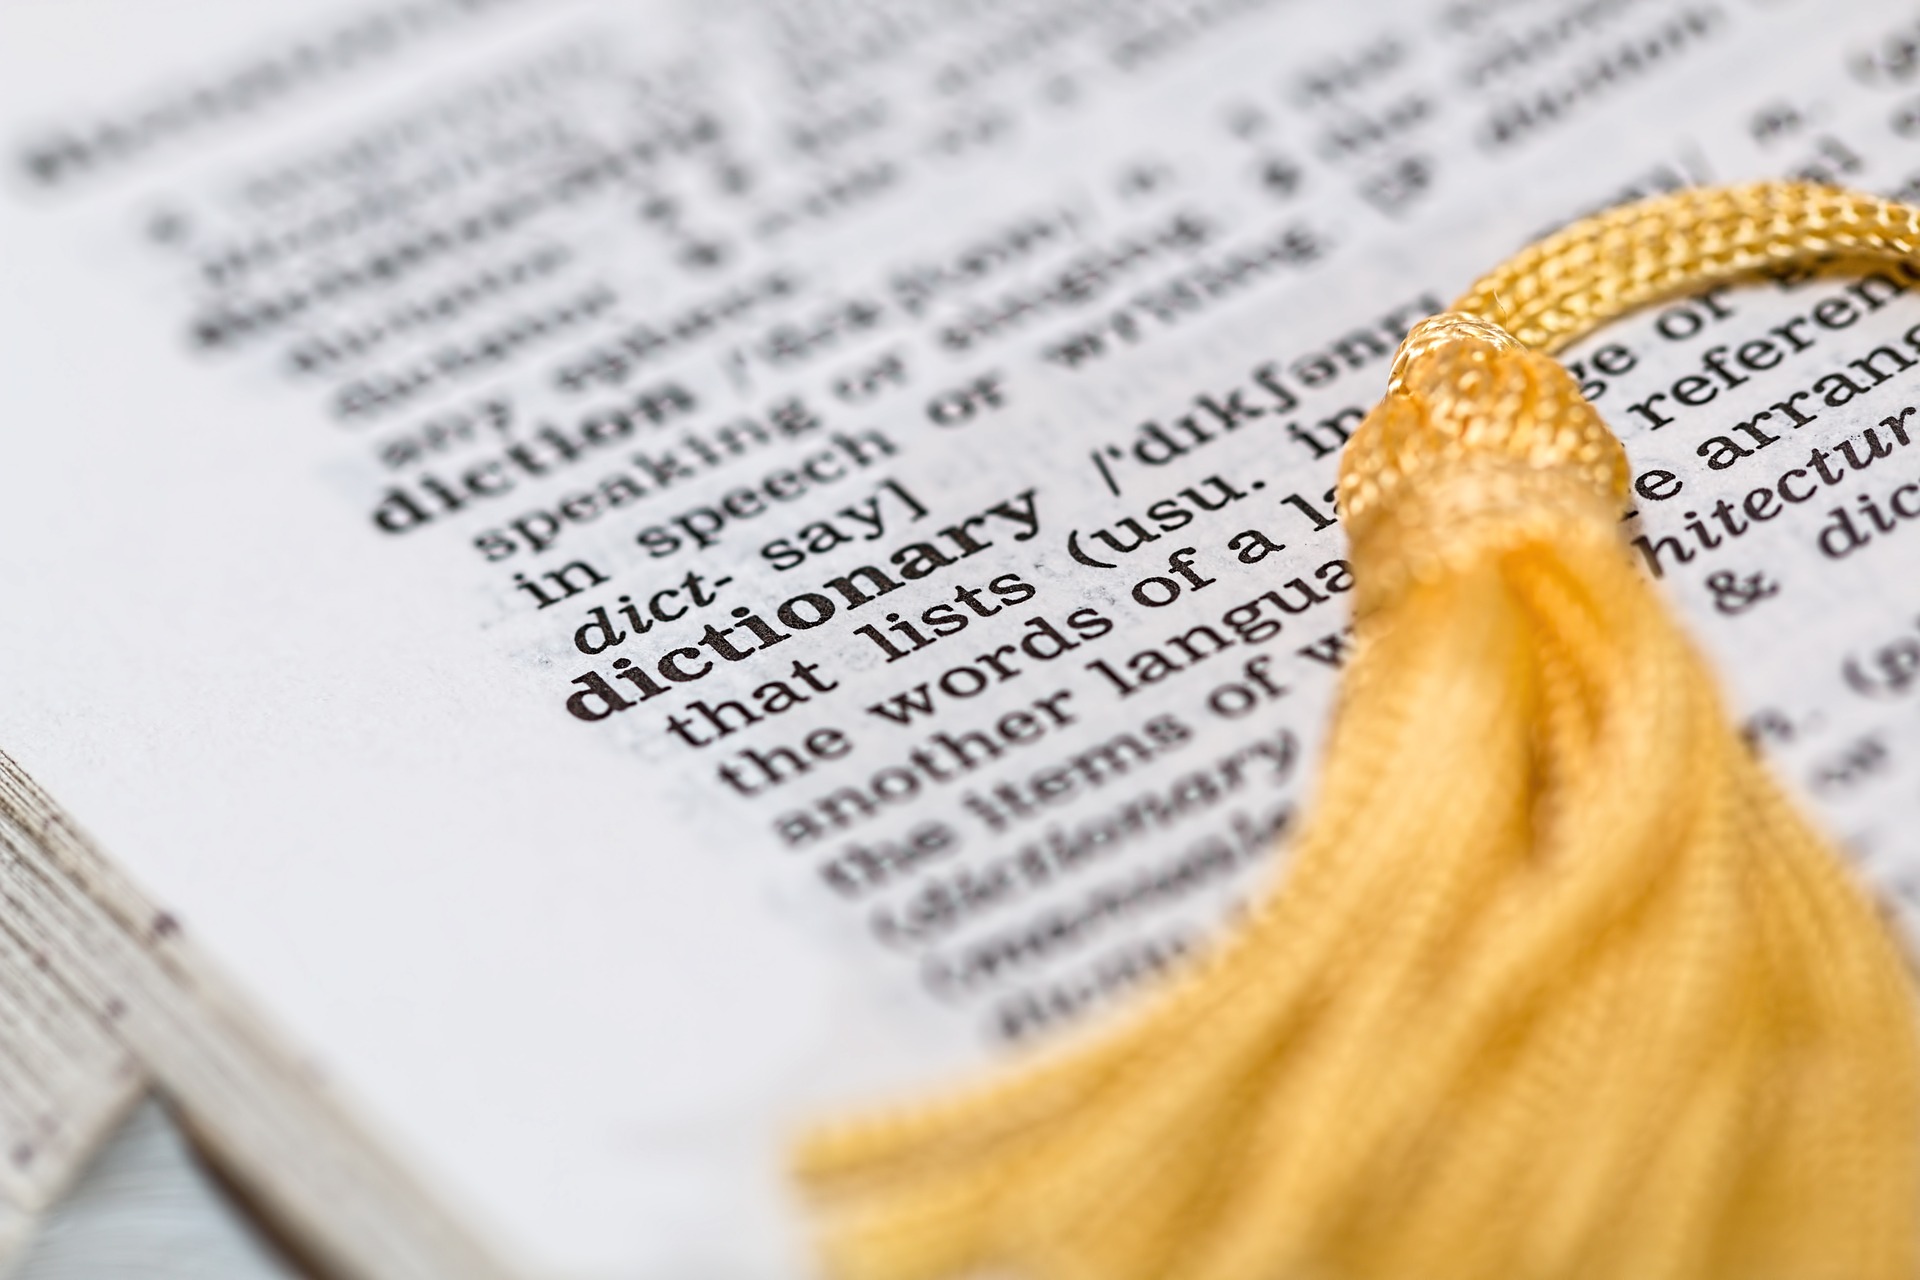 אוטמים ולומדים – המילון השלם למונחי איטום